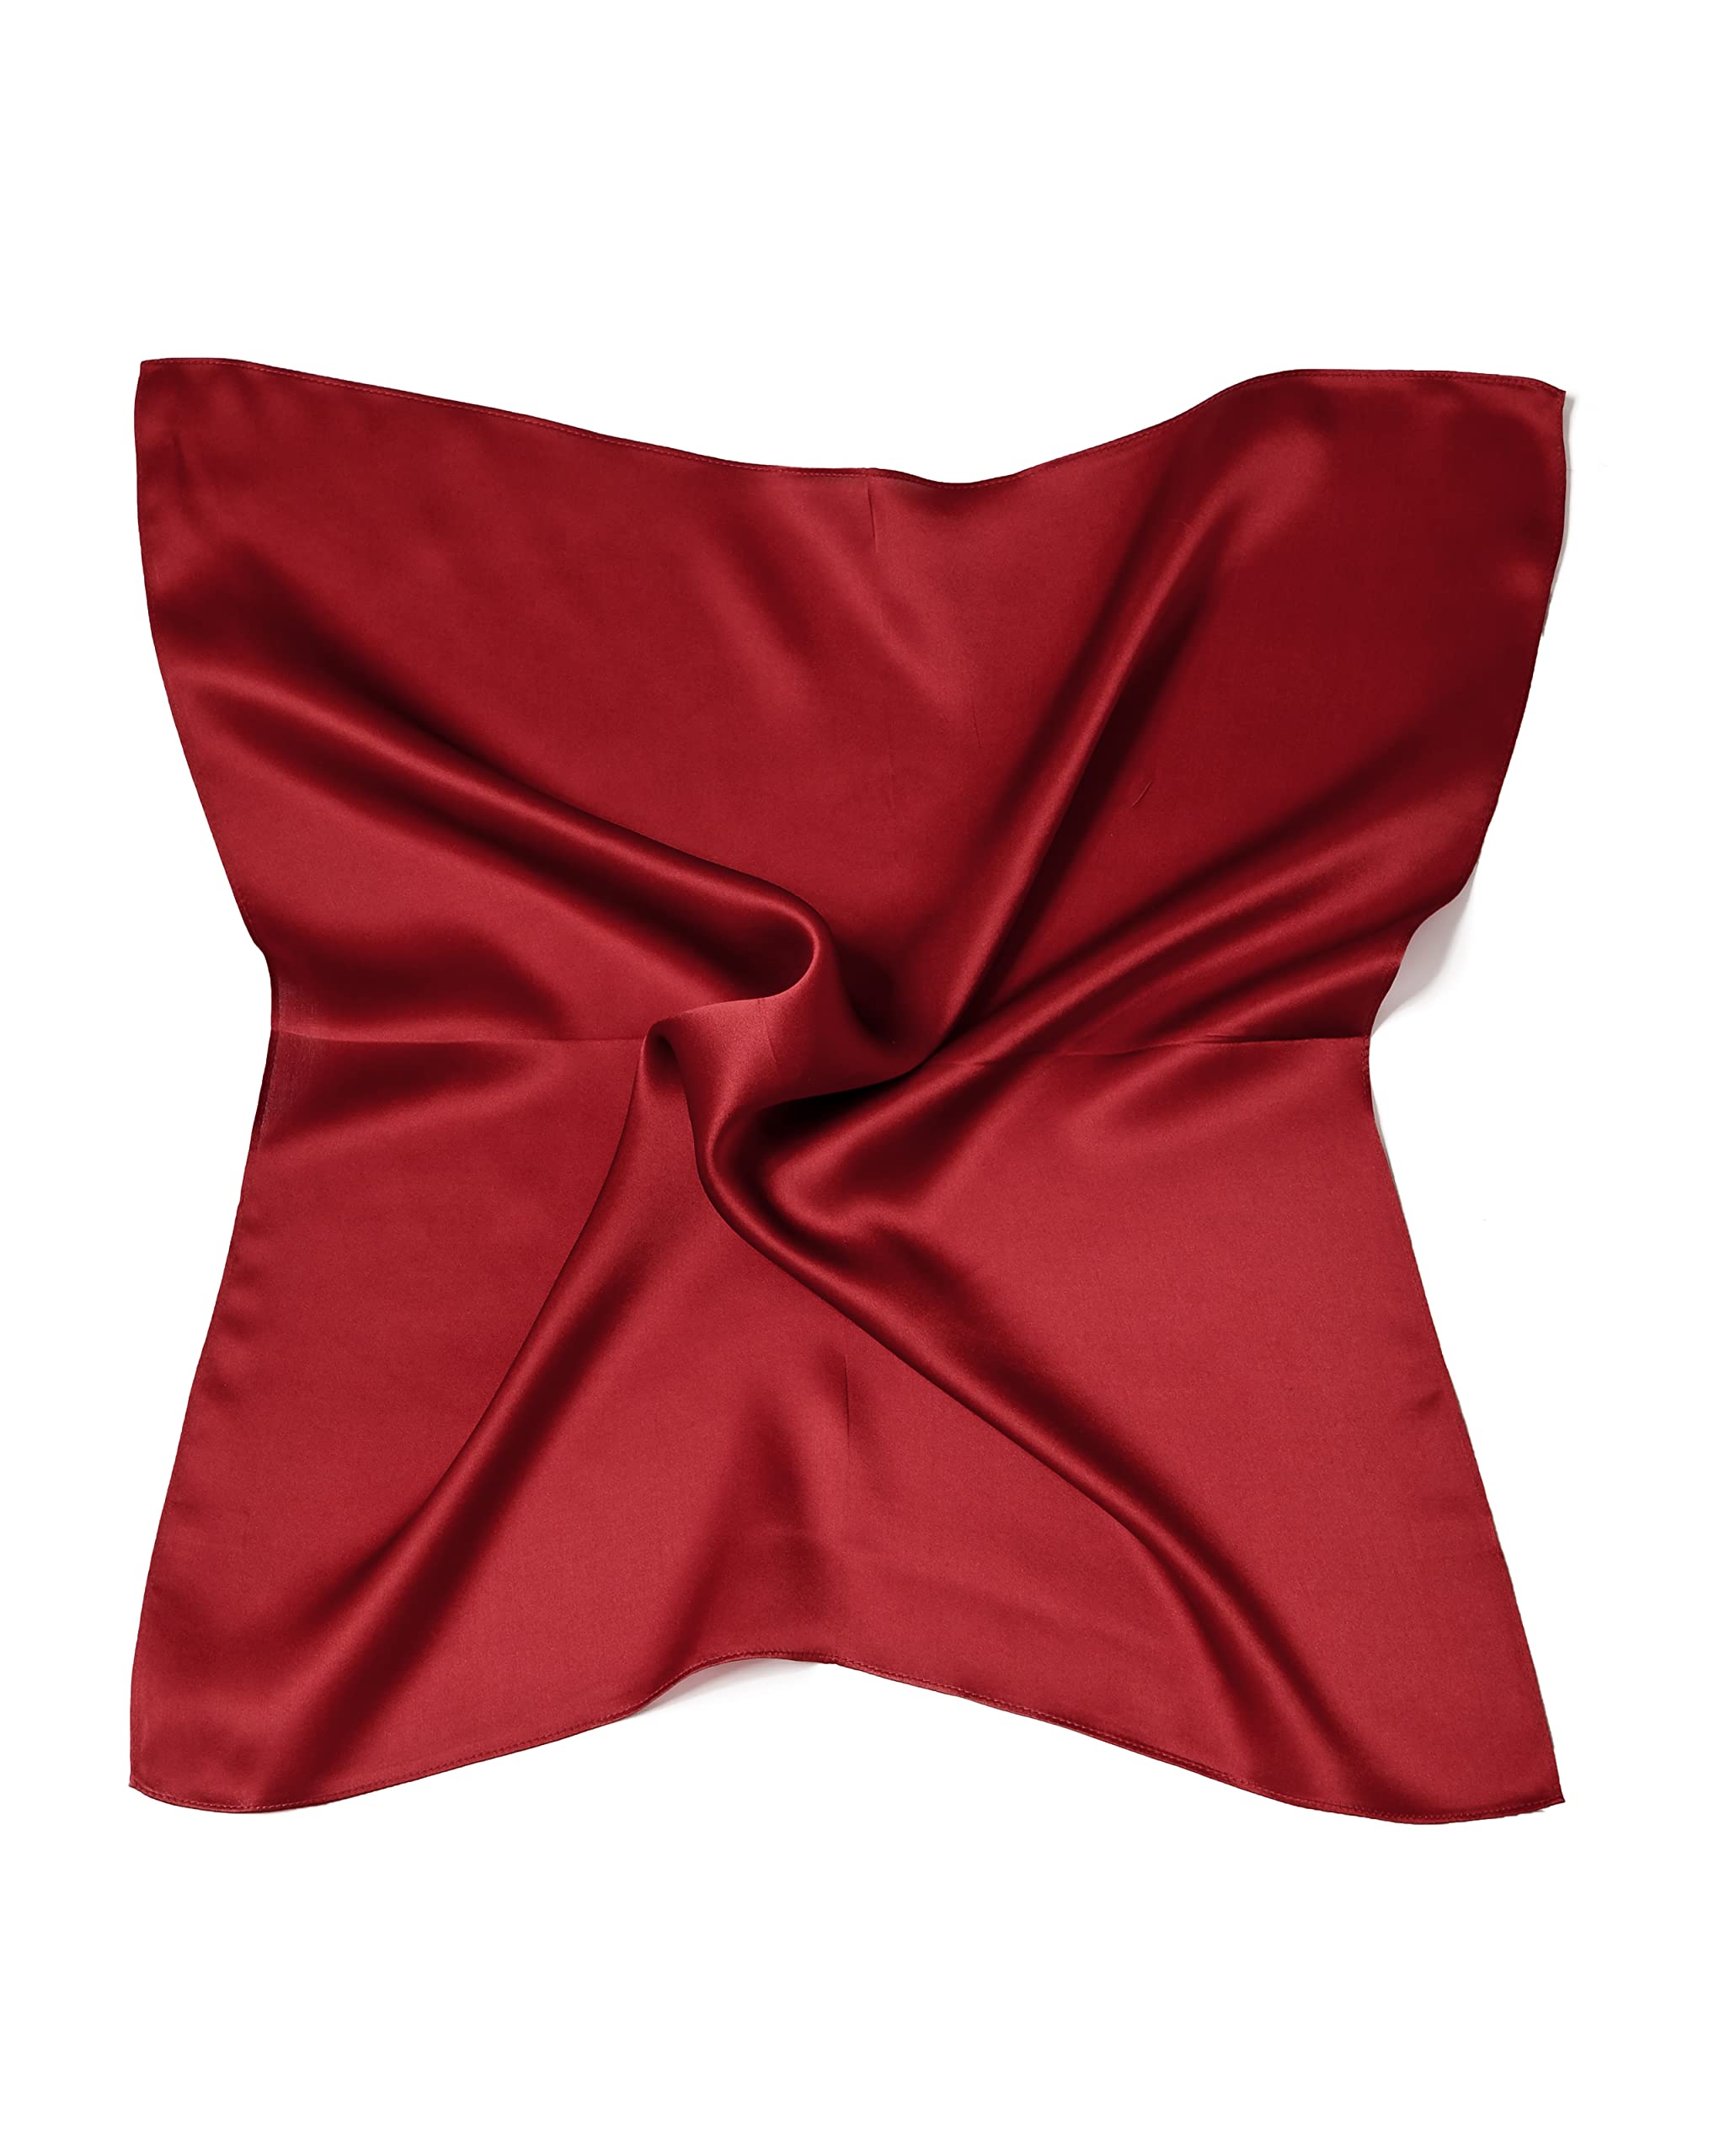 MayTree Seidentuch, buntes Halstuch für Damen, Nickituch aus 100% Maulbeer-Seide, quadratisch einfarbig 53x53 kirsch rot